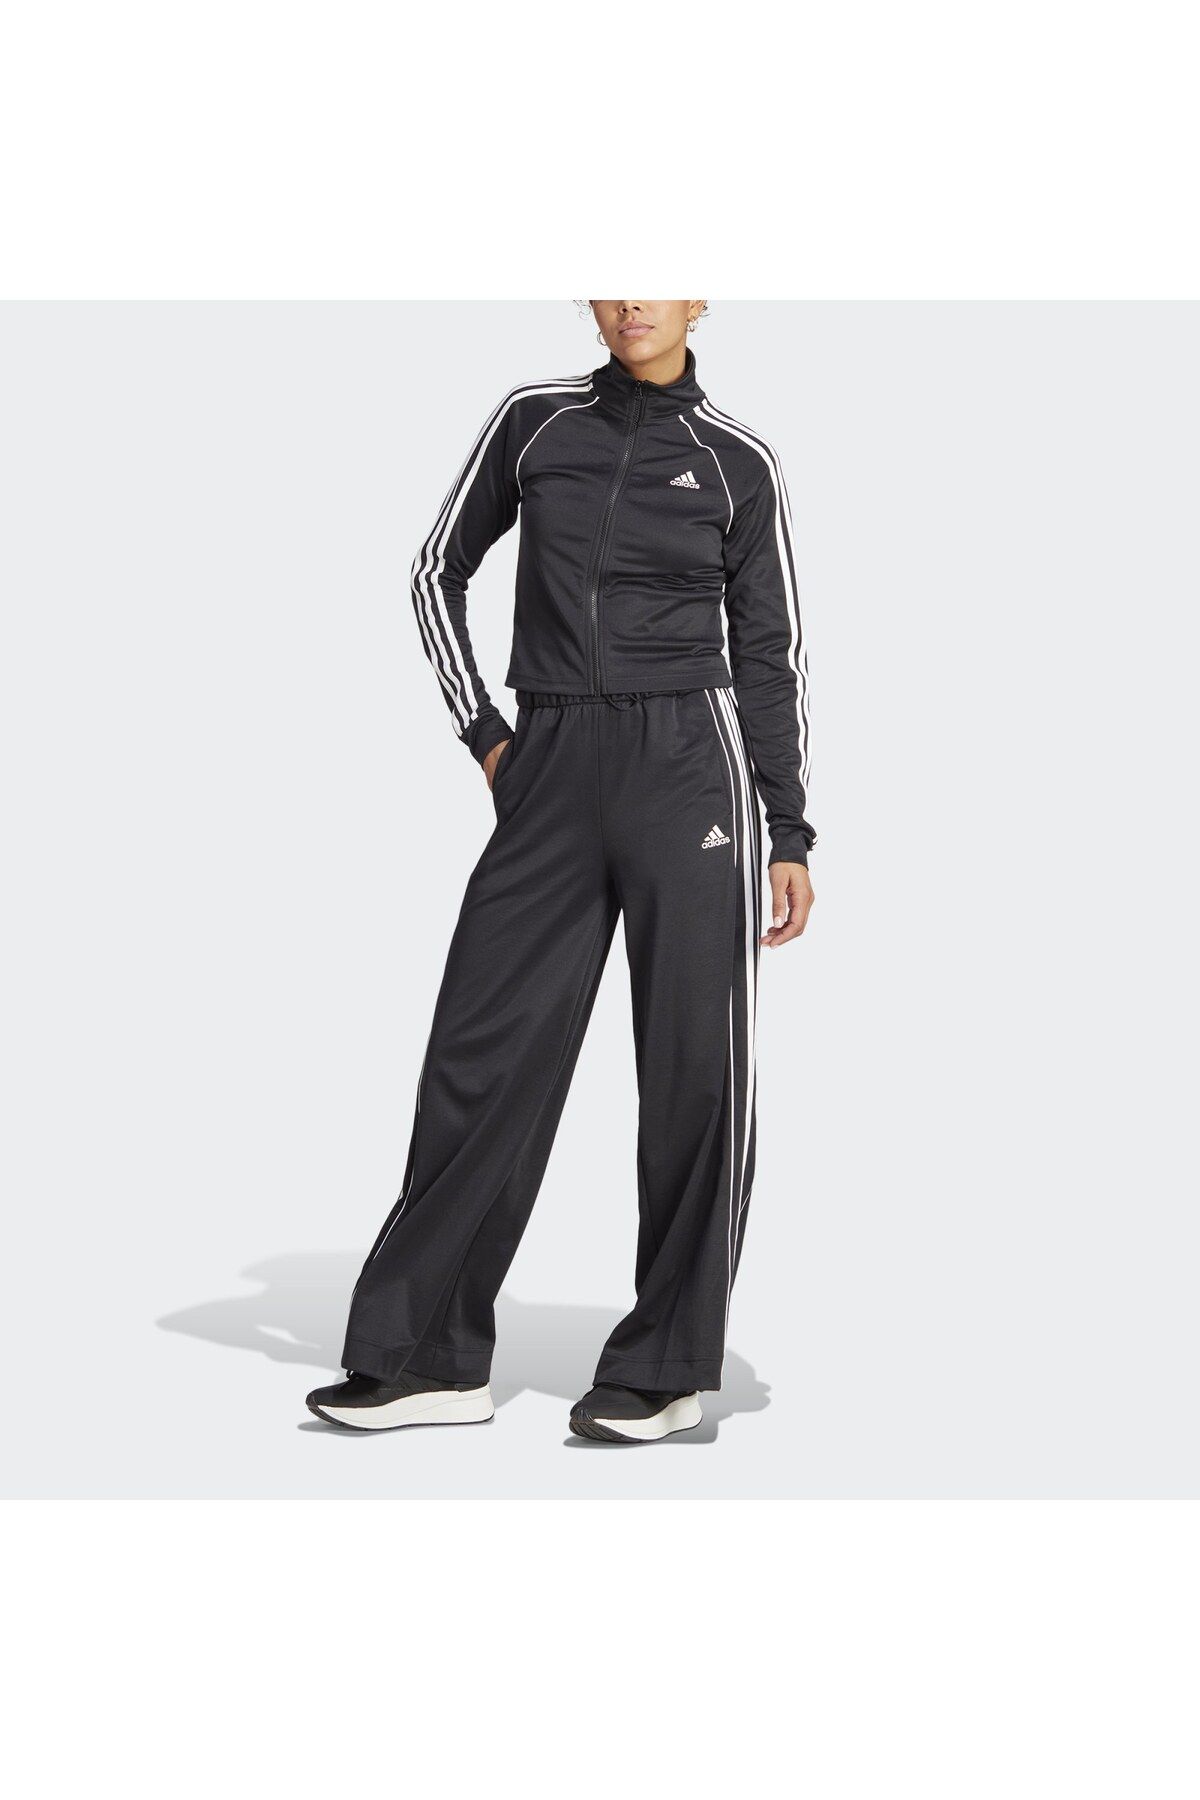 adidas Teamsport Kadın Eşofman Takımı IA3147 Siyah/Beyaz